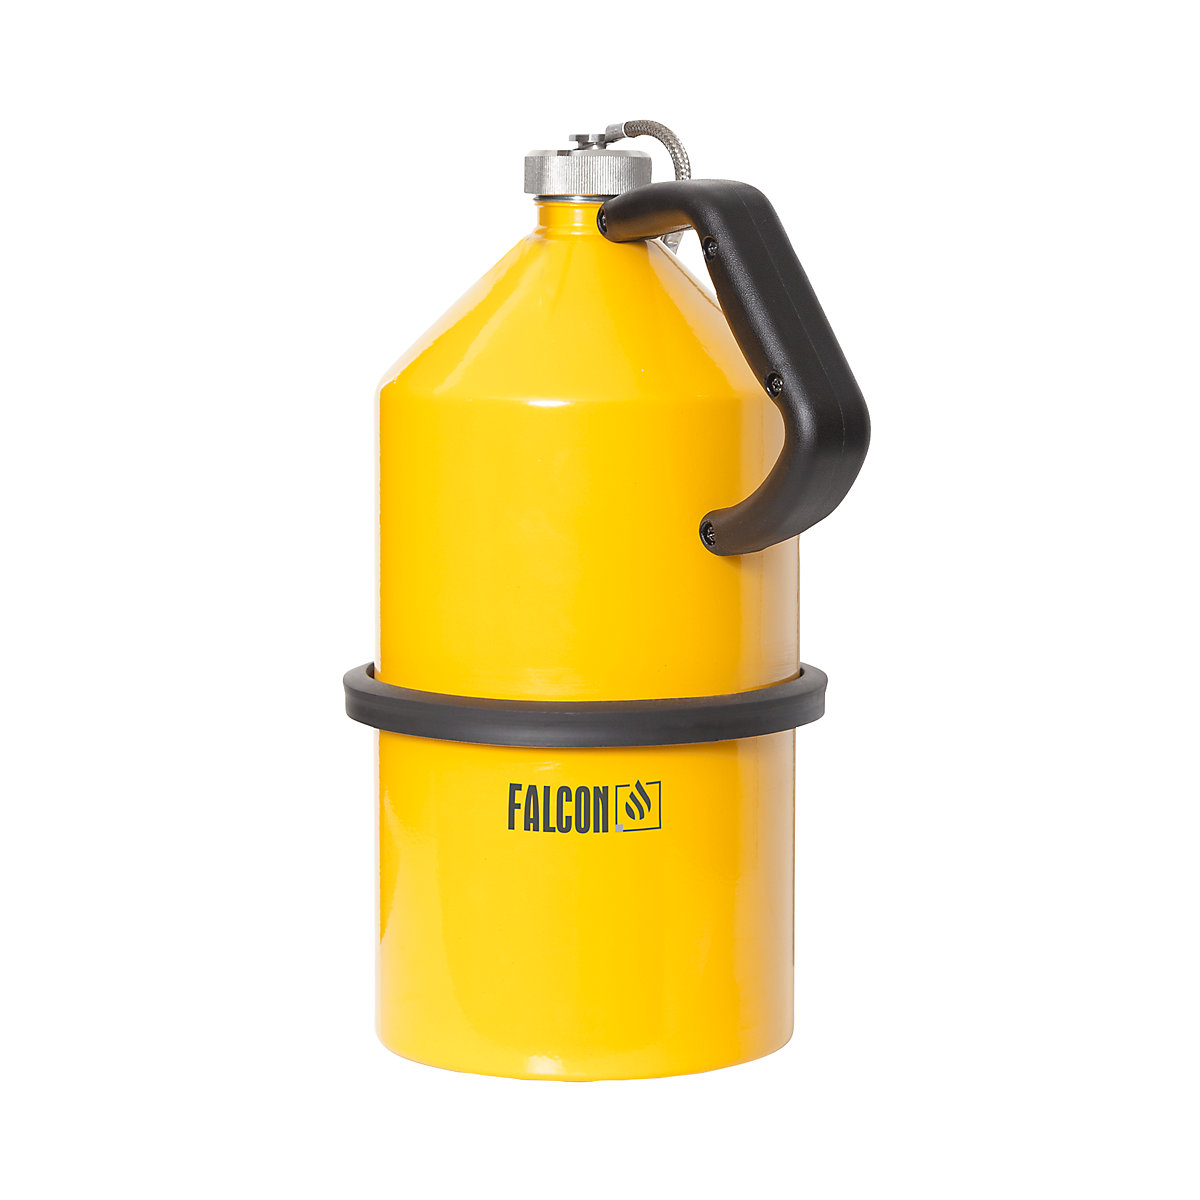 Sicherheits-Lager- und Transportbehälter mit Schraubkappe FALCON, Stahlblech gelb, Volumen 5 l-5